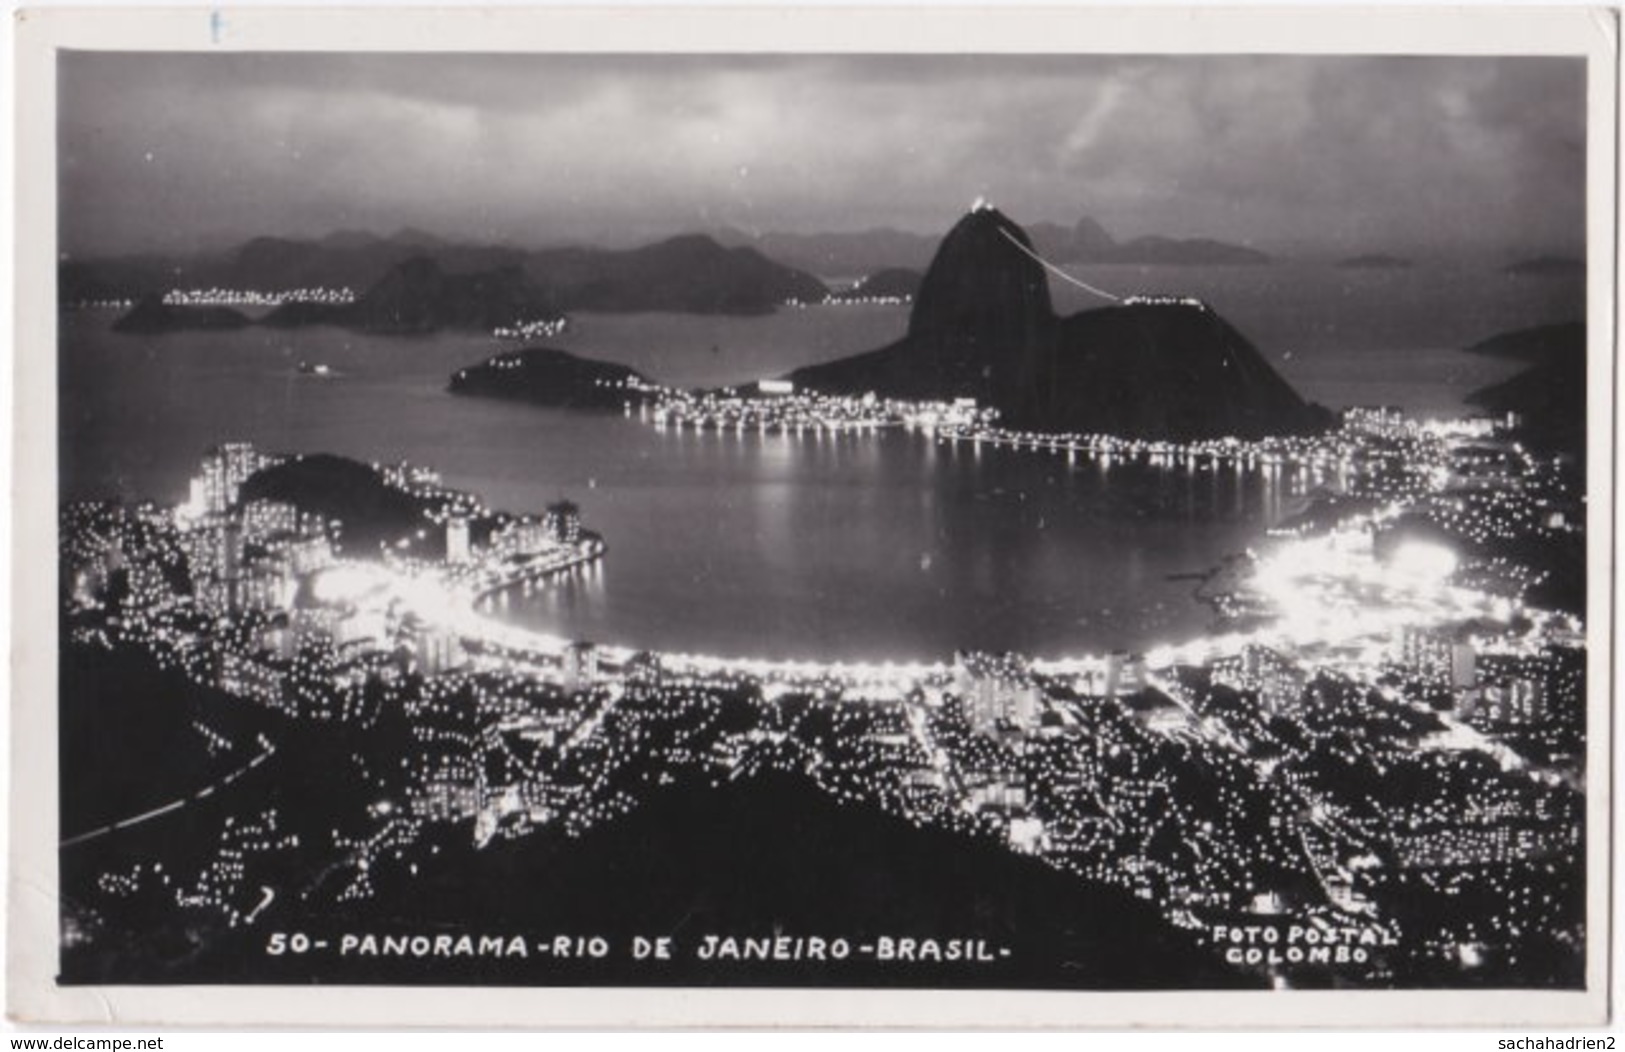 Pf. RIO DE JANEIRO. Panorama. 50 - Rio De Janeiro